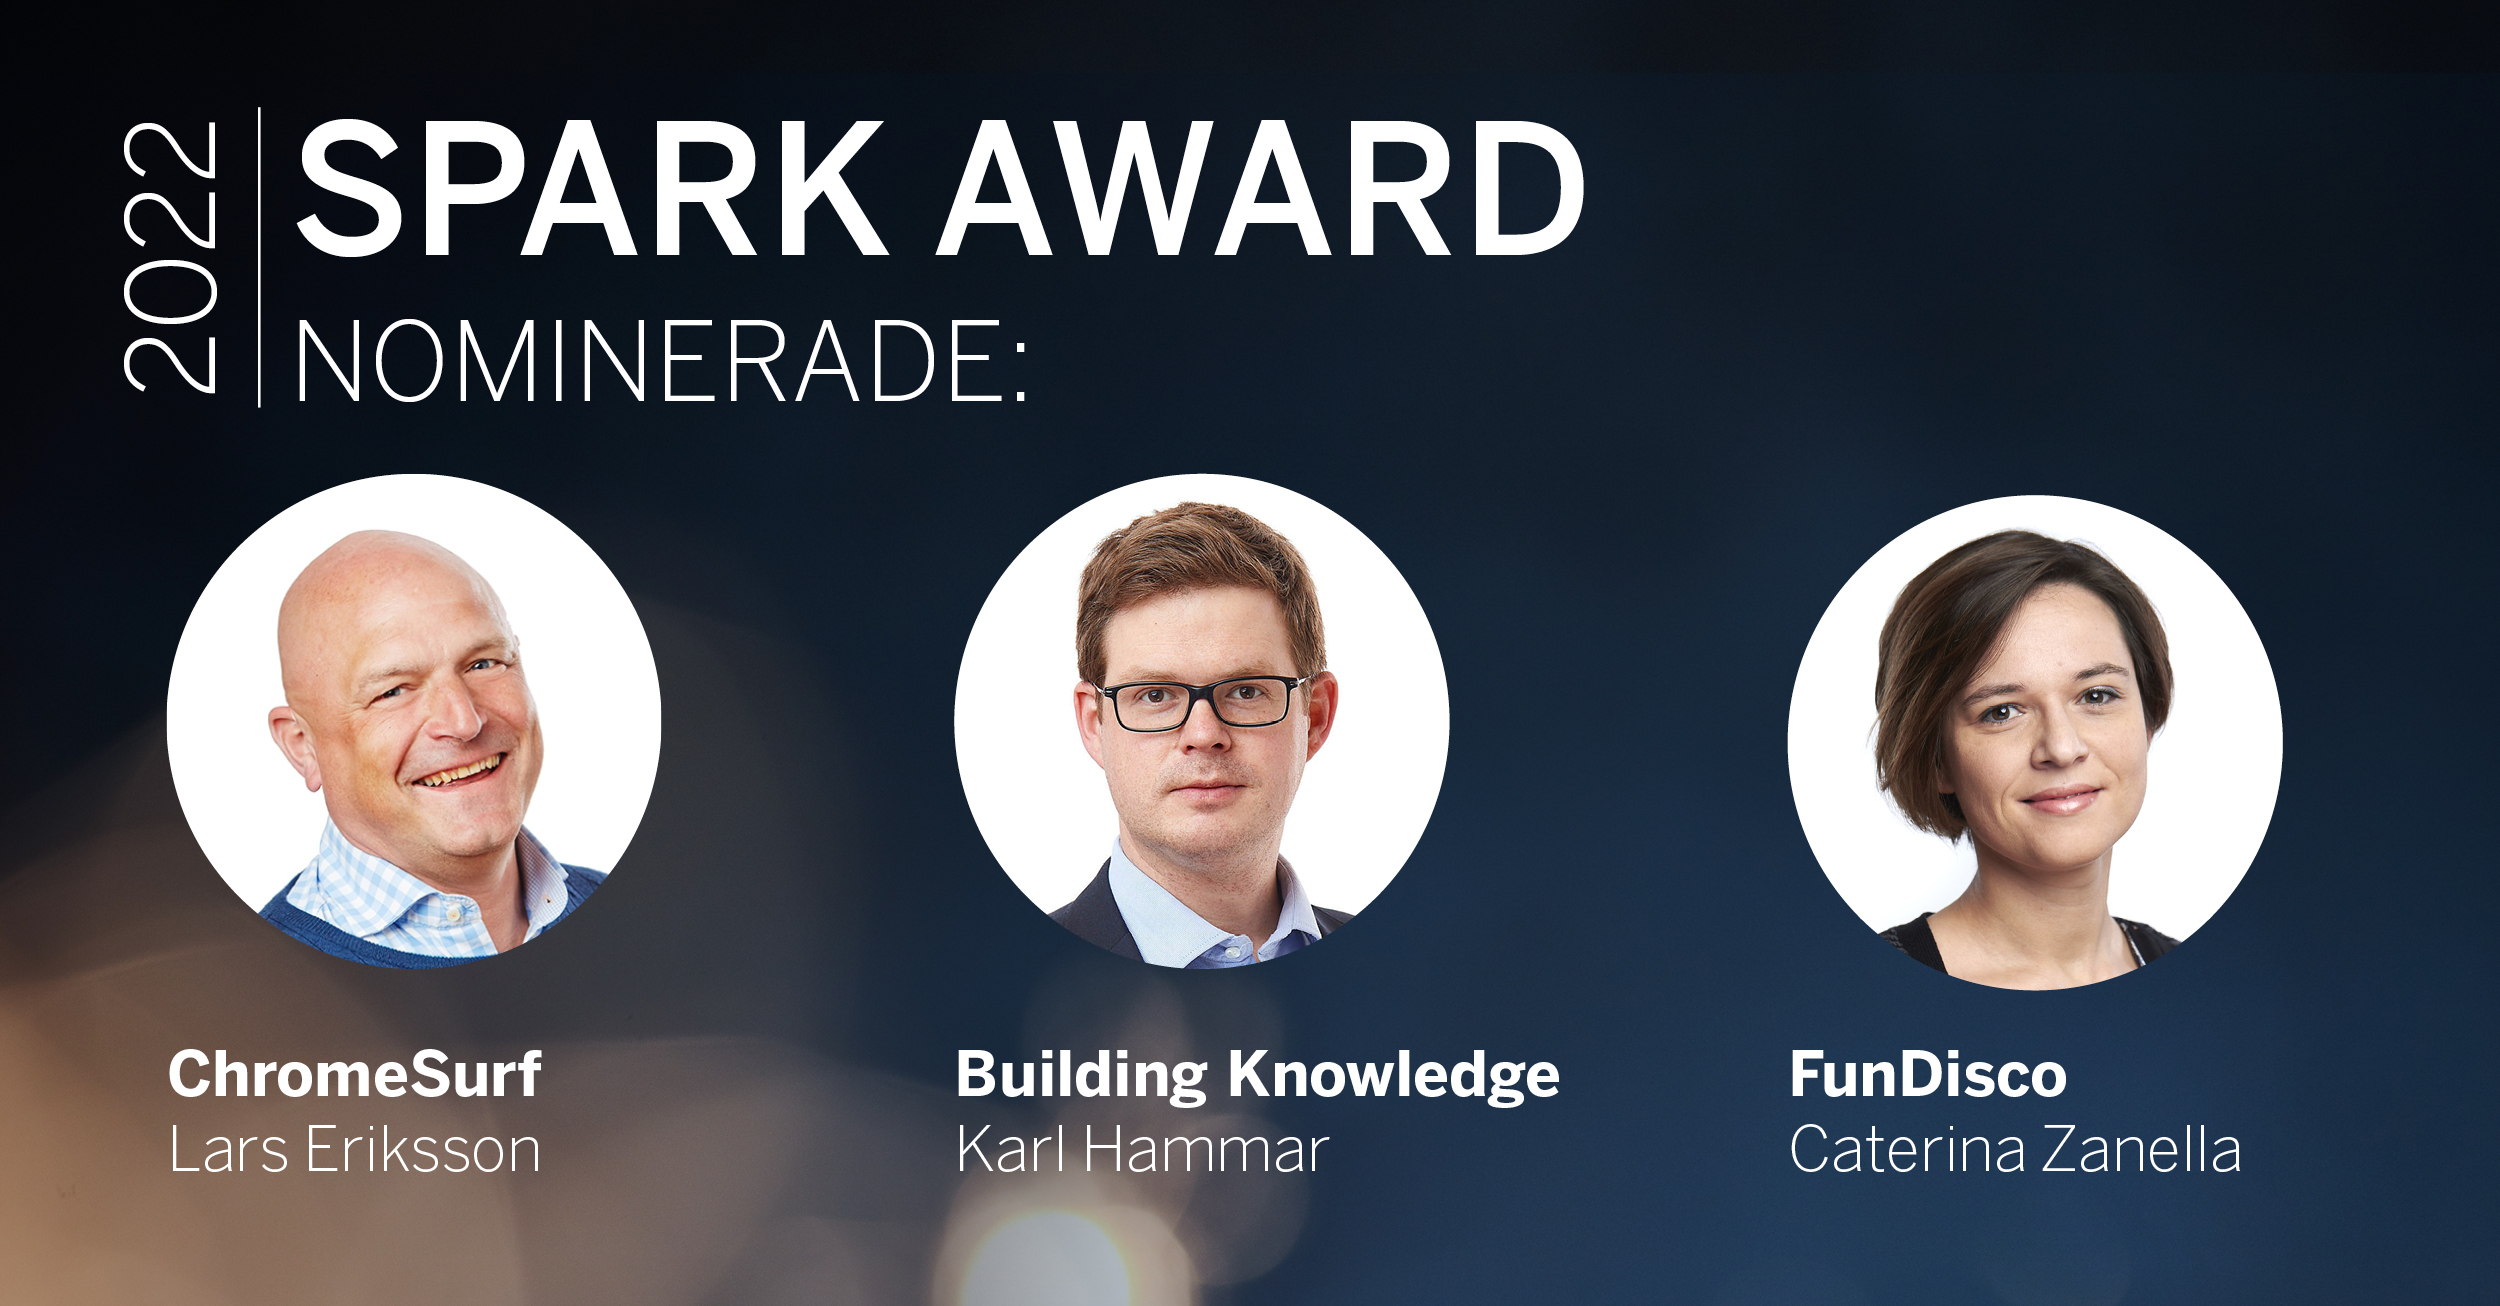 The nominated for SPARK Award är Lars Eriksson, Karl Hammar och Caterina Zanella.